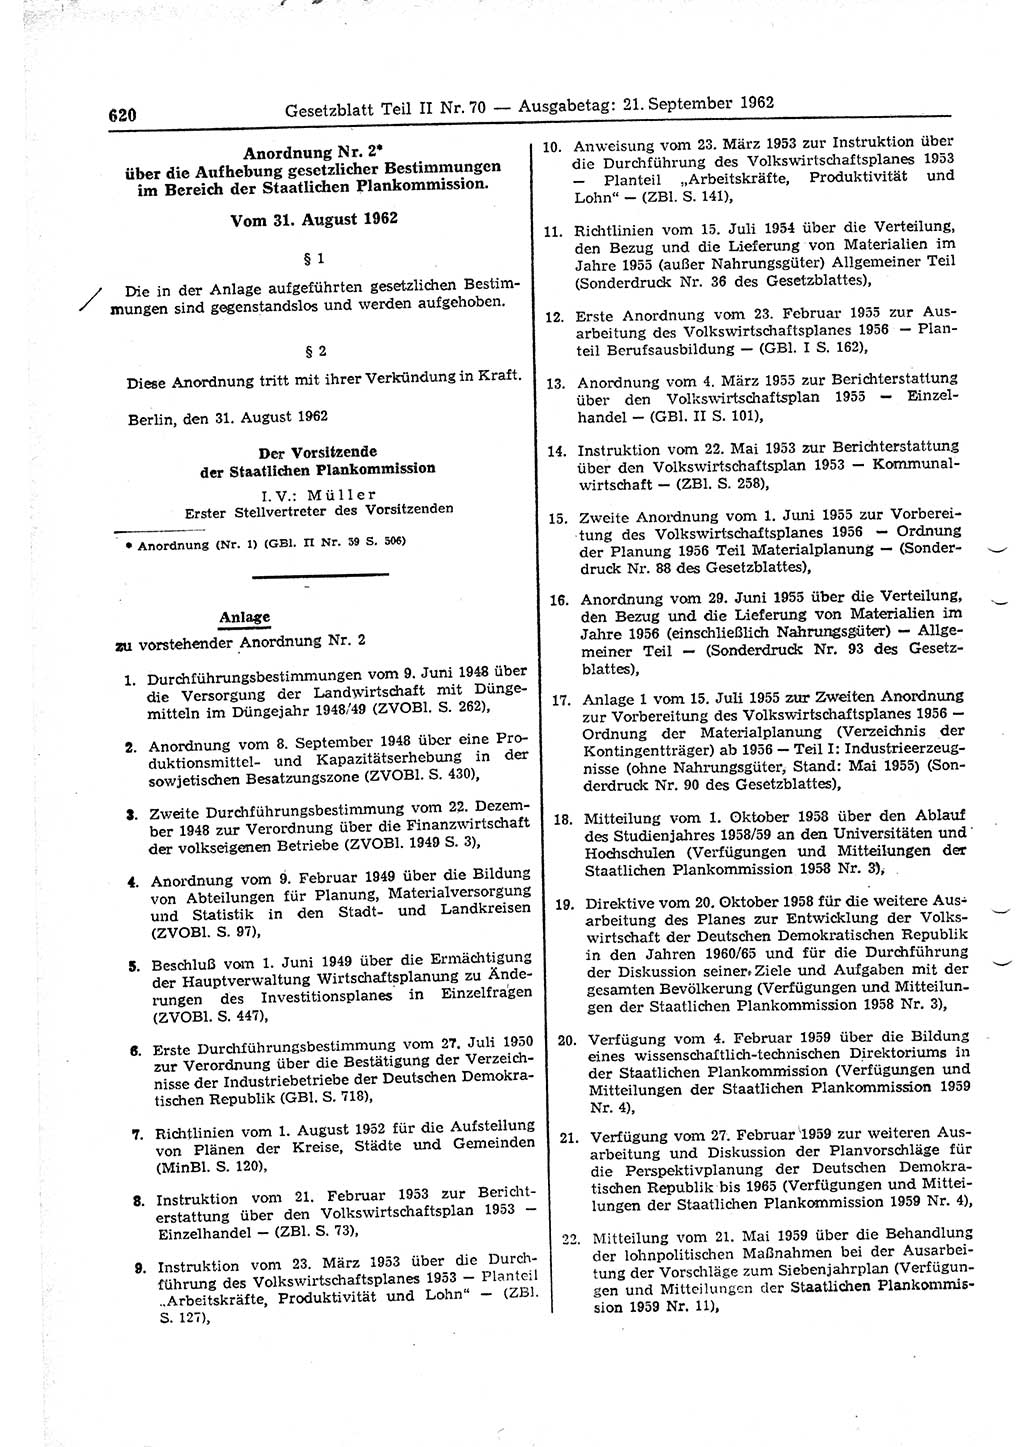 Gesetzblatt (GBl.) der Deutschen Demokratischen Republik (DDR) Teil ⅠⅠ 1962, Seite 620 (GBl. DDR ⅠⅠ 1962, S. 620)